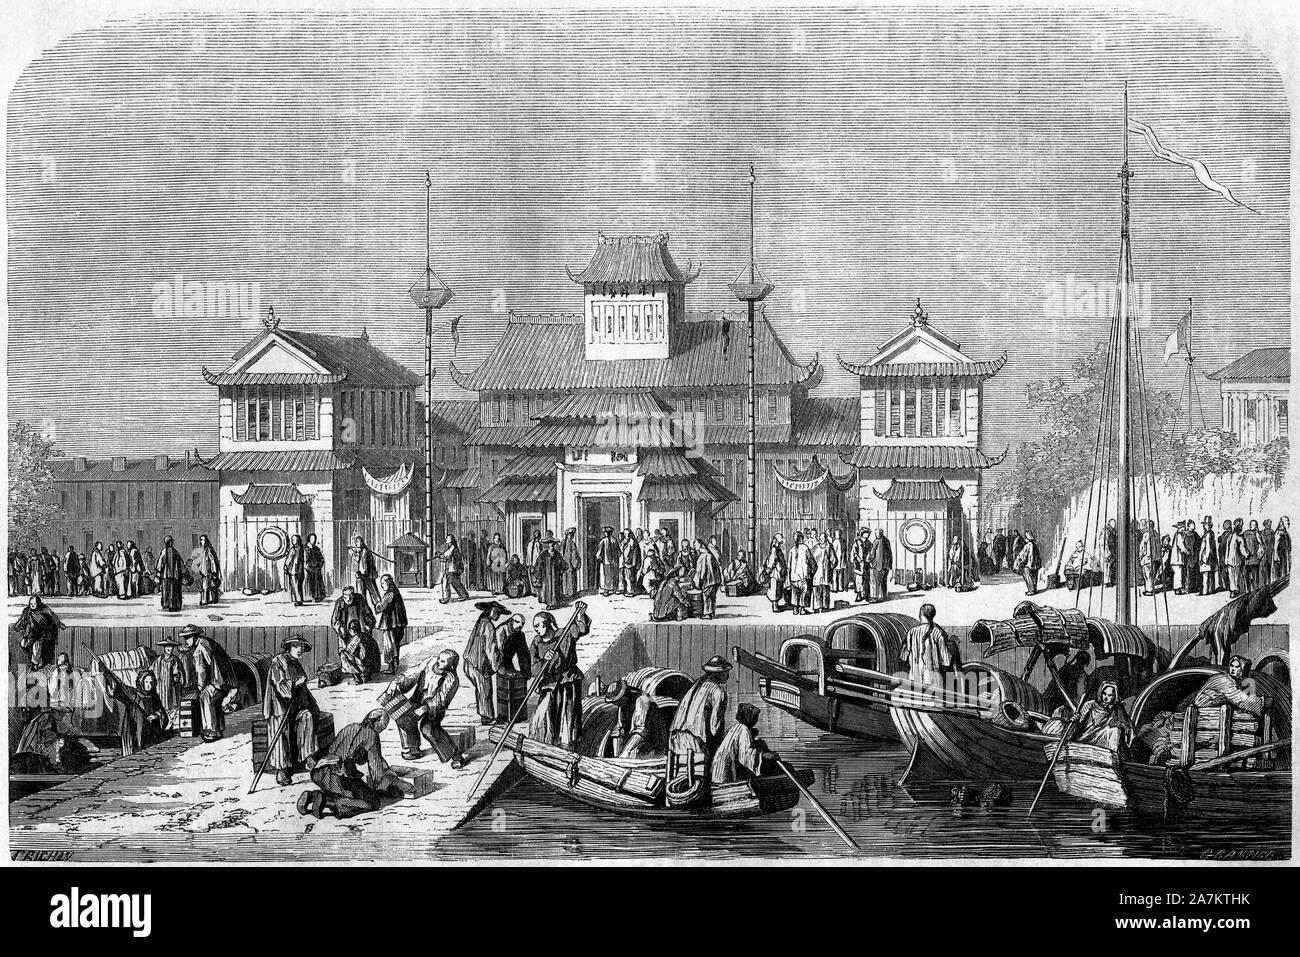 Vue de la douane dans le port de Shanghai en 1860, Chine. Gravure de Grandsire, in 'Le Tour du Monde, Nouveau journal des Voyages', sous la direction Stock Photo